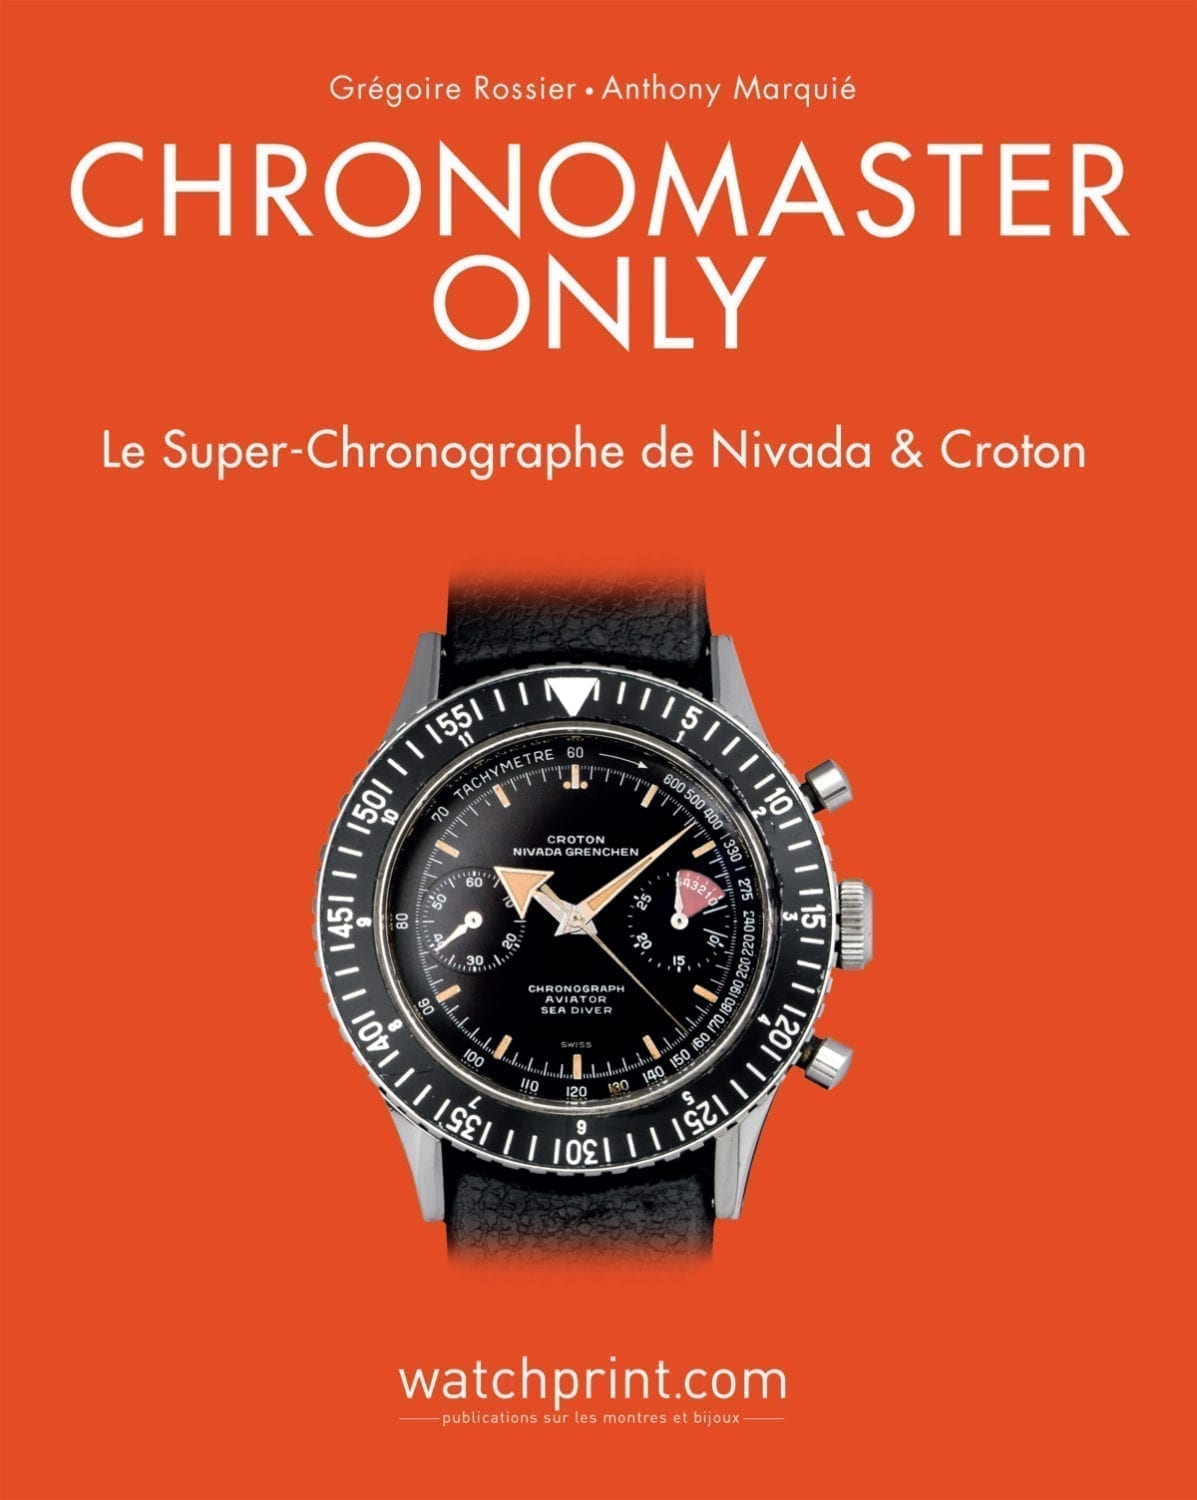 Chronomaster Only : Le Super-Chronographe de Nivada & Croton